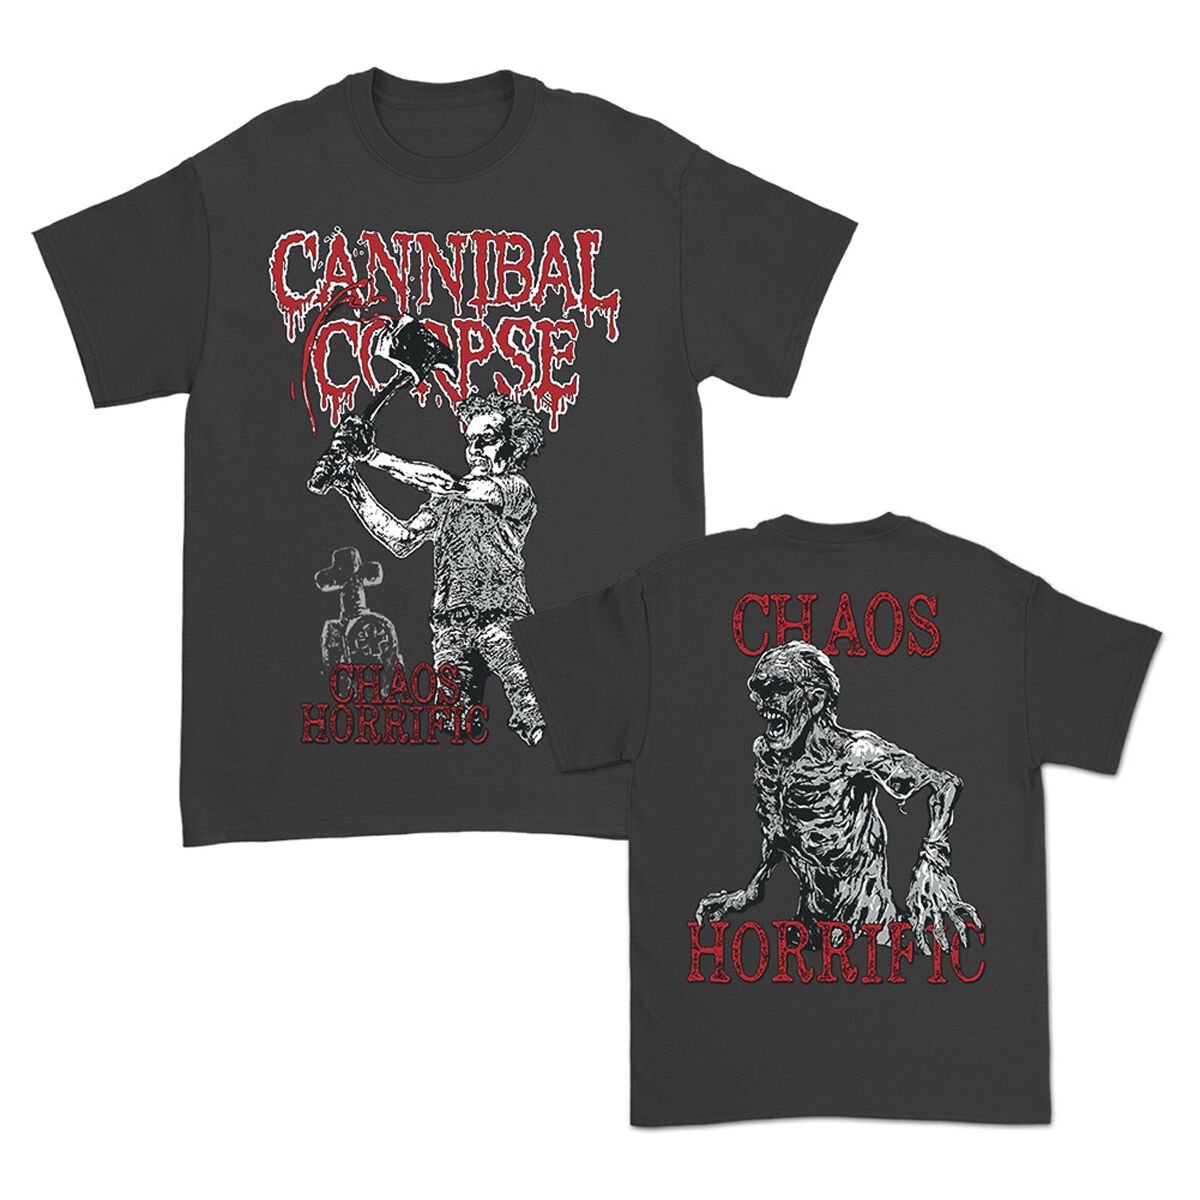 Cannibal Corpse T-Shirt - Chaos Horrific Bootleg - S - für Männer - Größe S - charcoal  - Lizenziertes Merchandise!